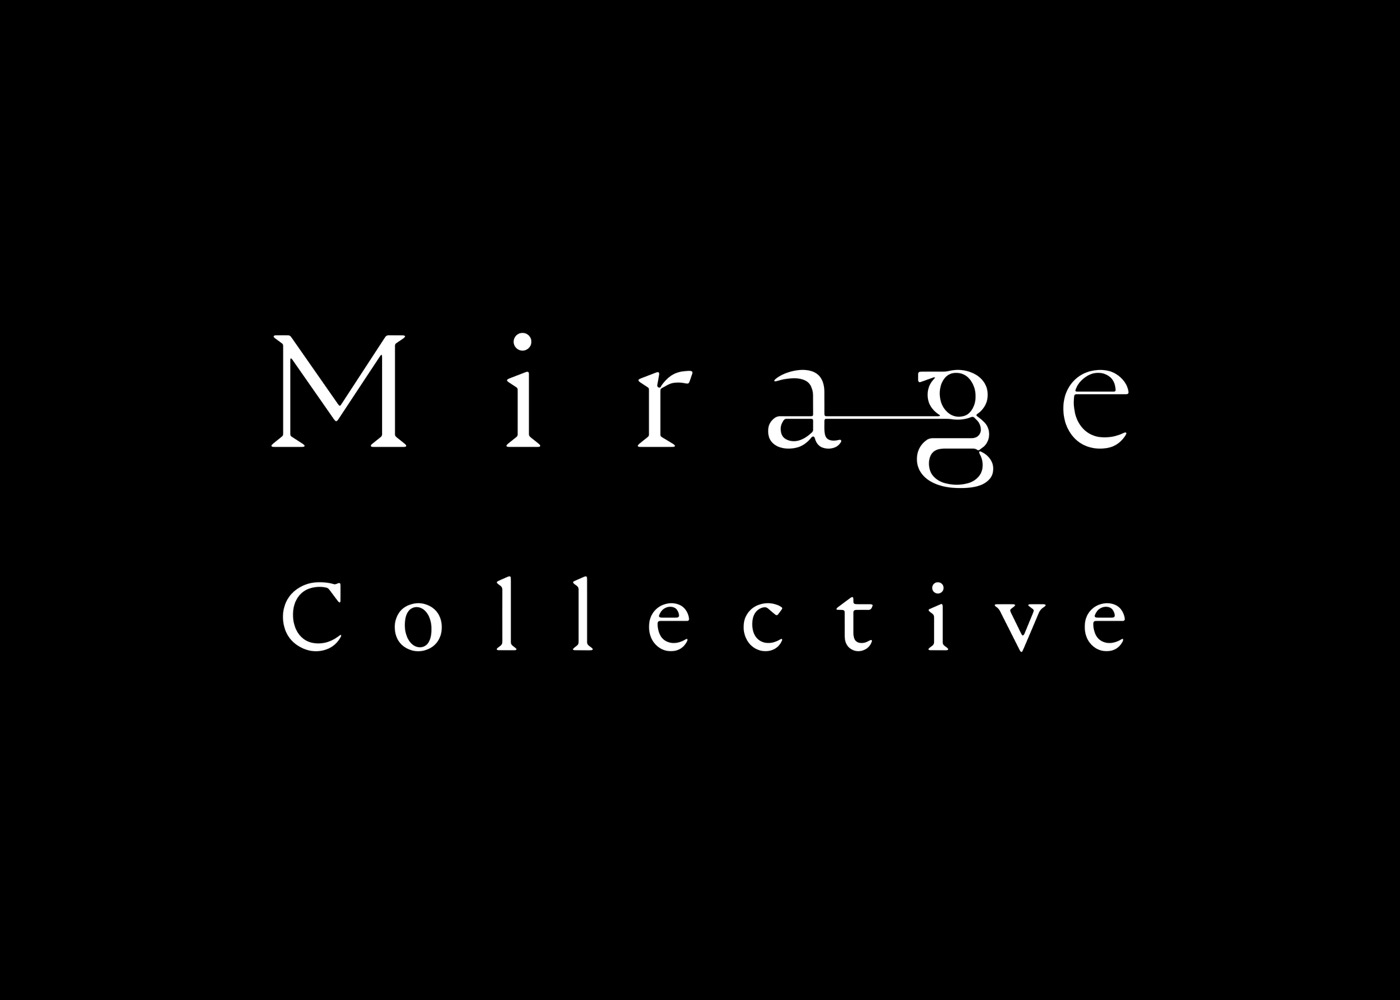 ドラマ『エルピス』主題歌「Mirage」、9話EDでドラマの劇伴を担当する大友良英をフィーチャリングしたバージョンがOA - 画像一覧（4/4）